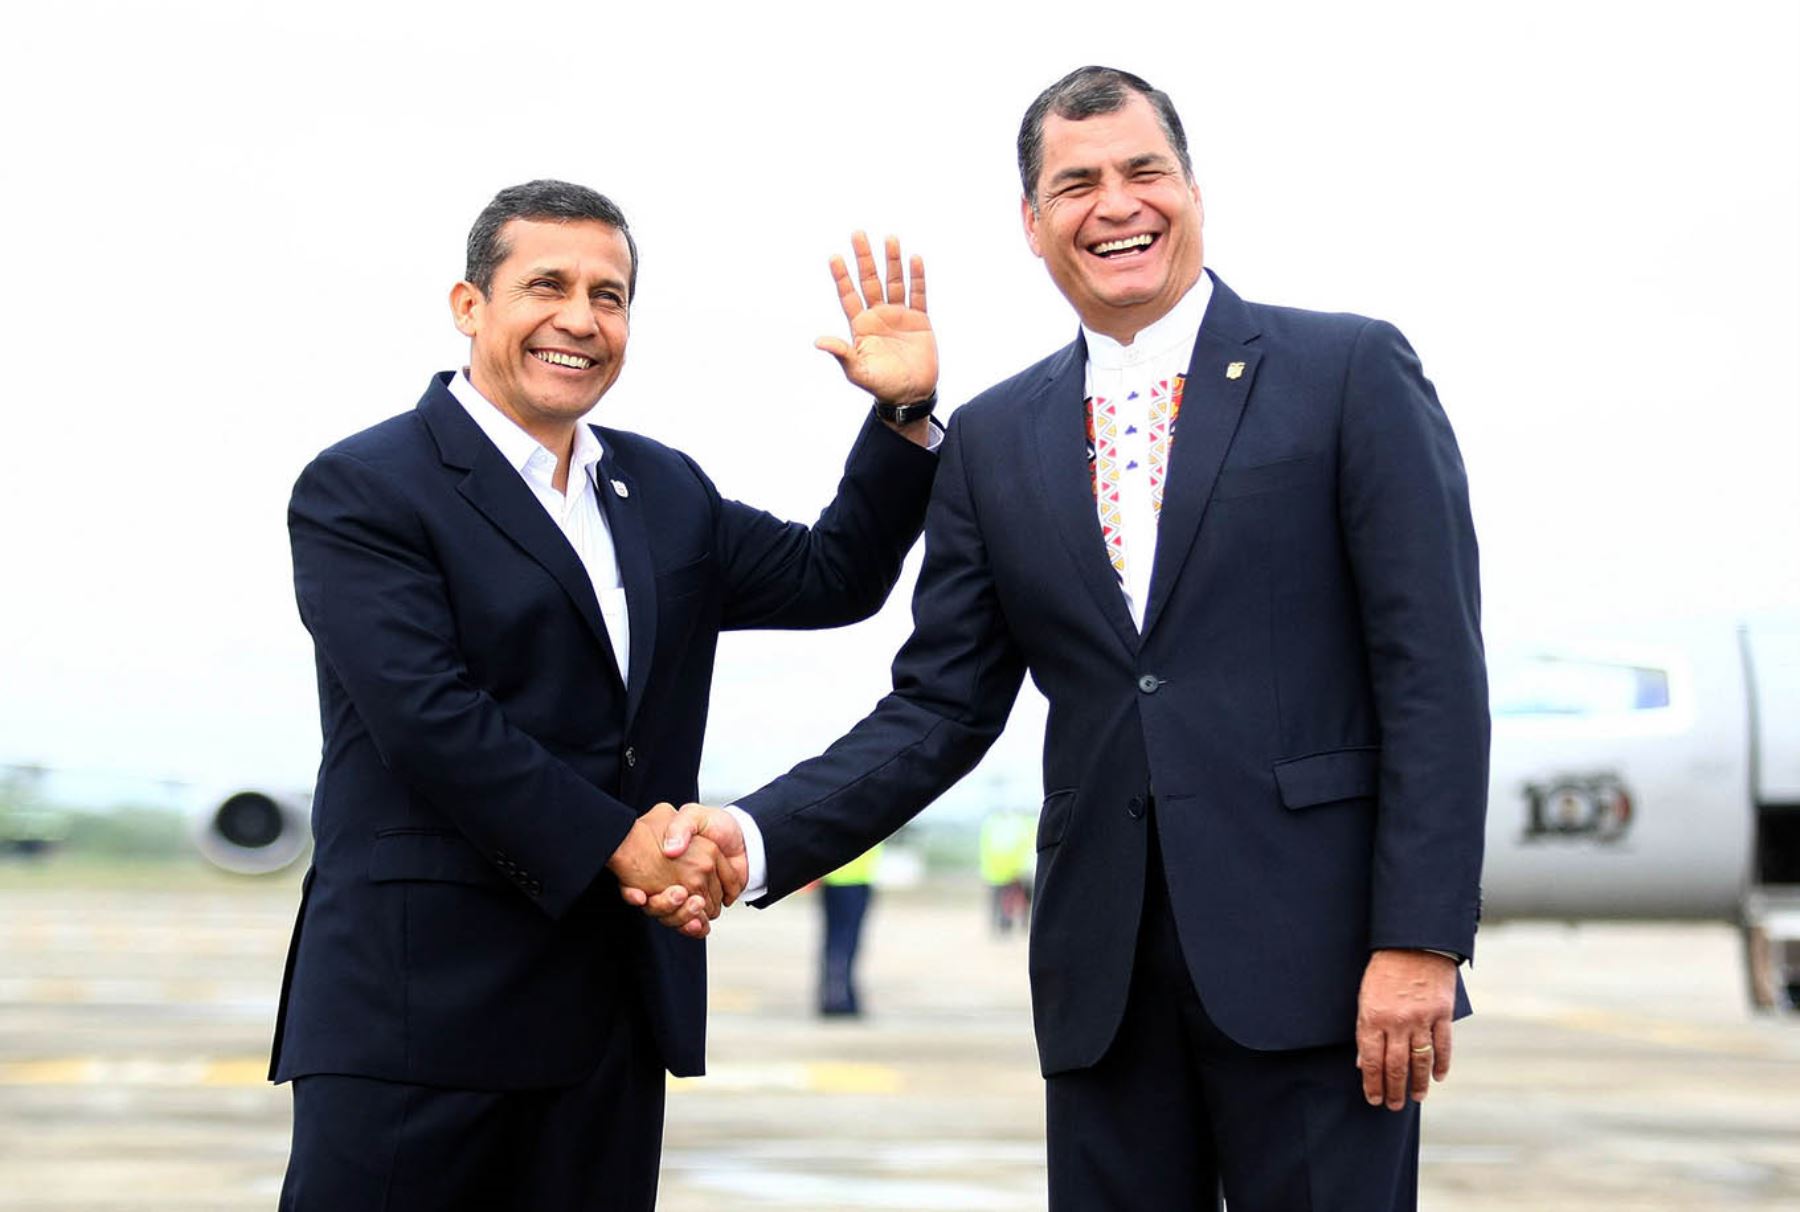 ECUADOR, OCTUBRE 30.Presidente Ollanta Humala llegó a la ciudad de Arenillas, en Ecuador, para sostener un encuentro con su homólogo de Ecuador, Rafael Correa, y participar en la VIII Reunión del Gabinete Binacional de Ministros Perú – Ecuador.Foto:ANDINA/Prensa Presidencia